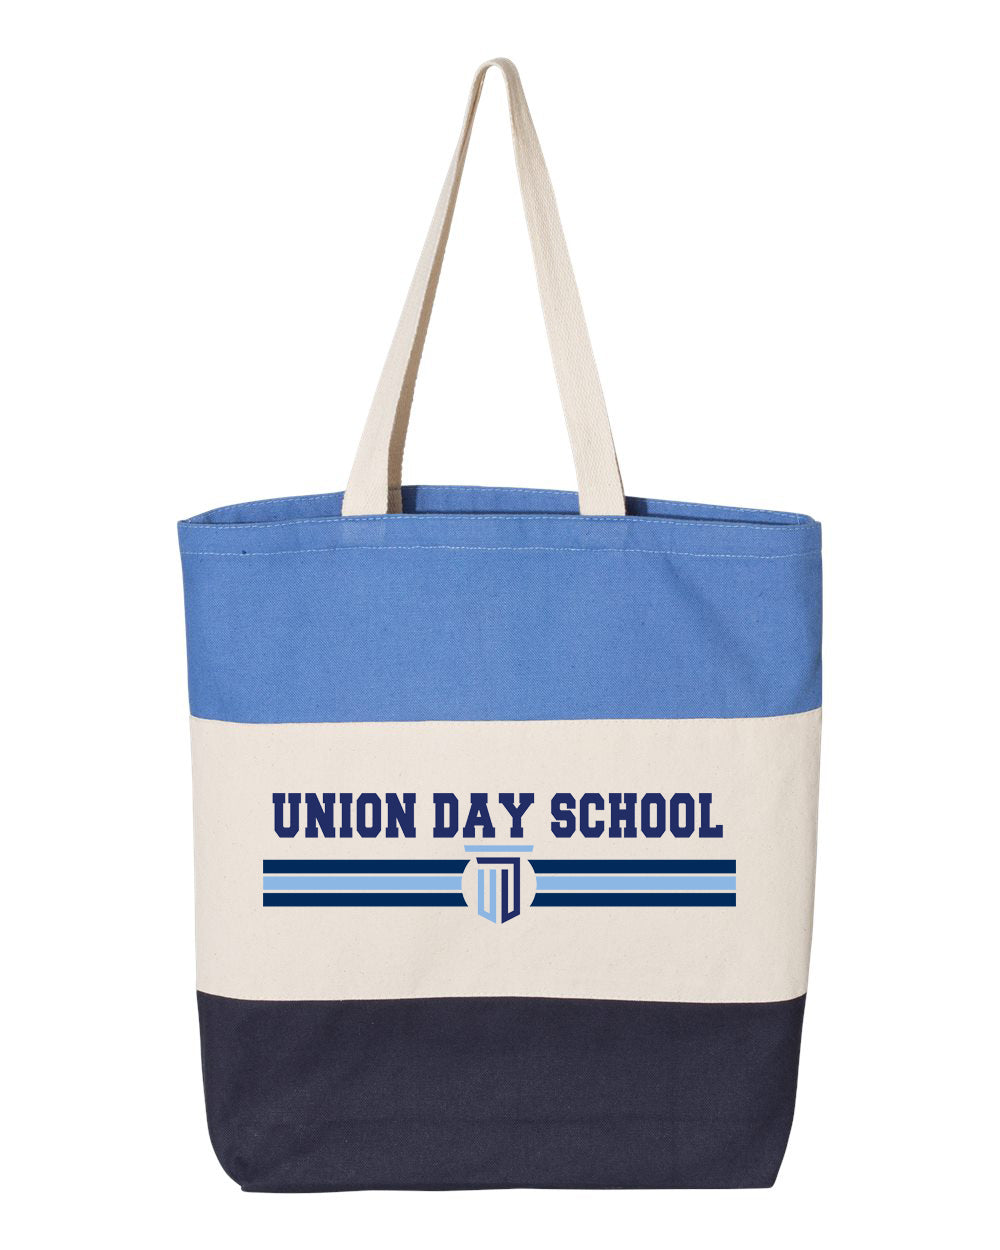 Union Day School Tote Bag